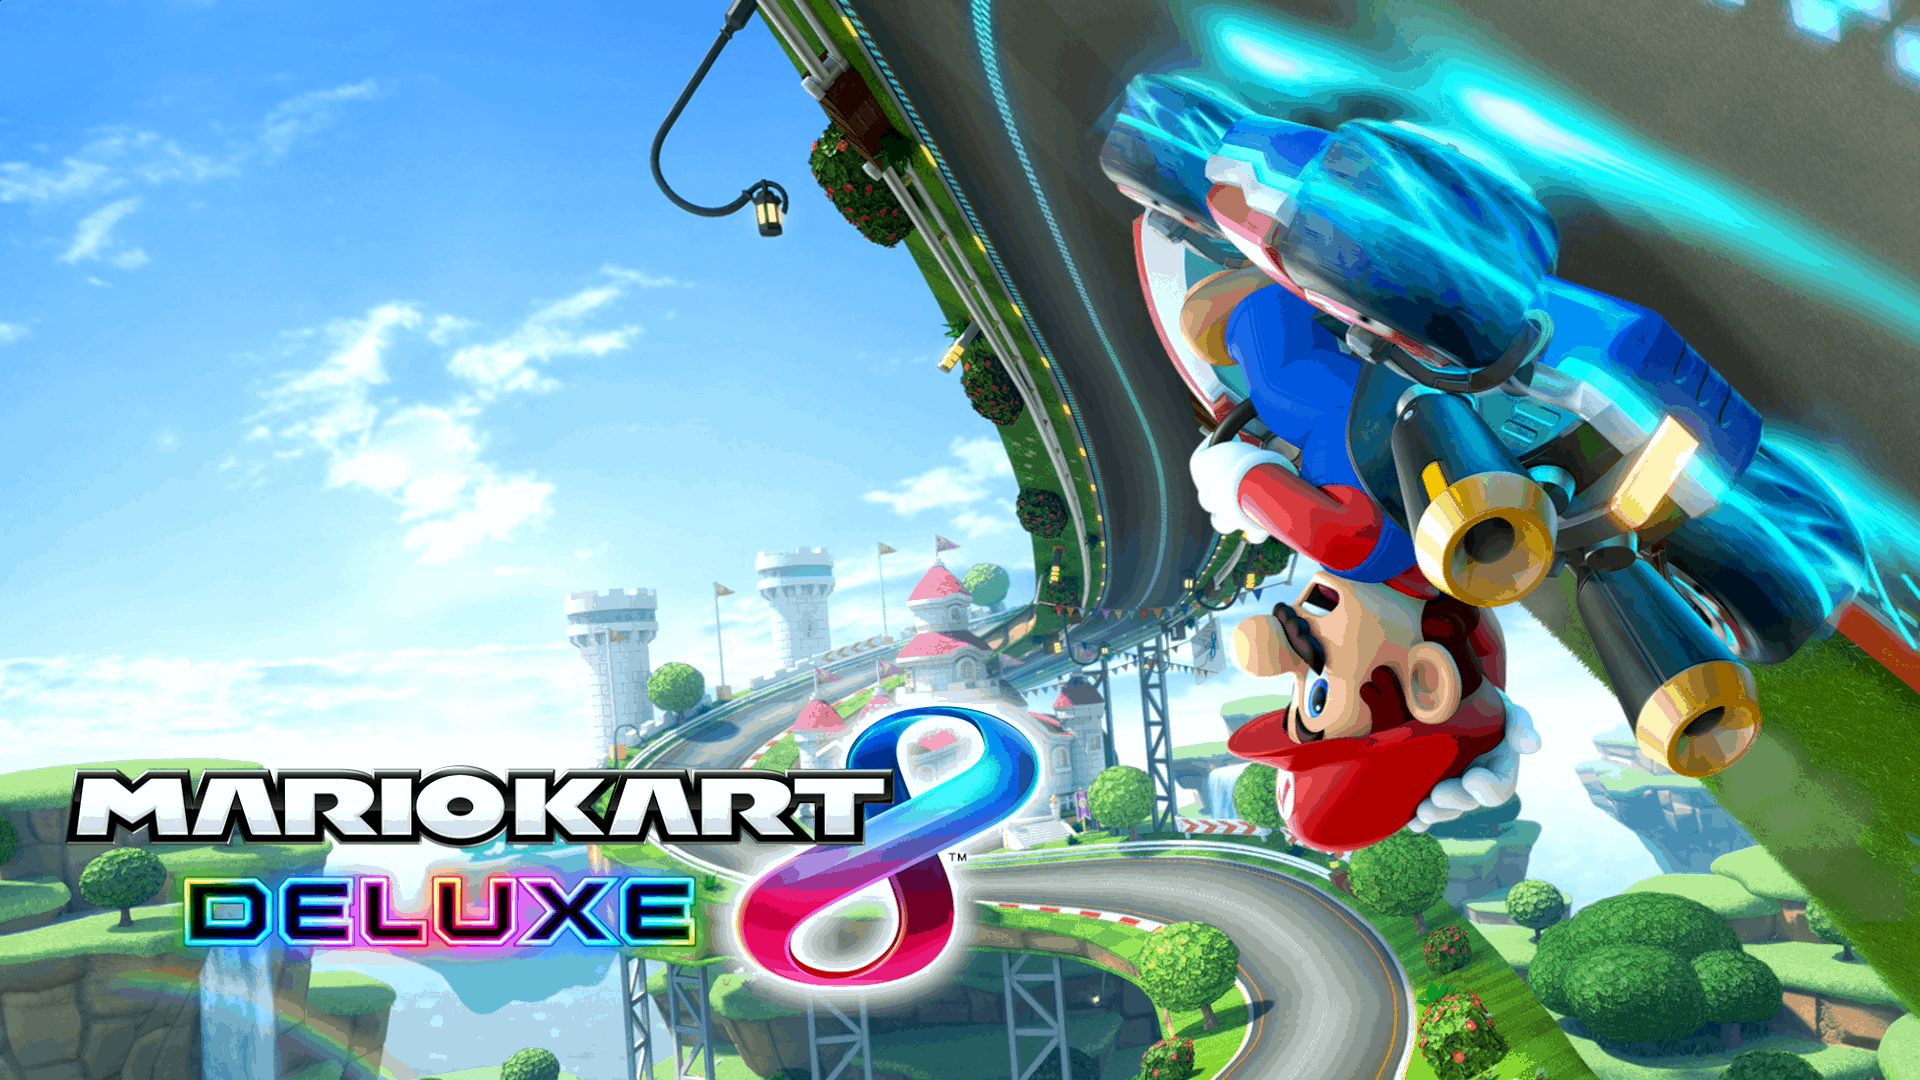 Best Racing Games - Mario Kart 8 Deluxe